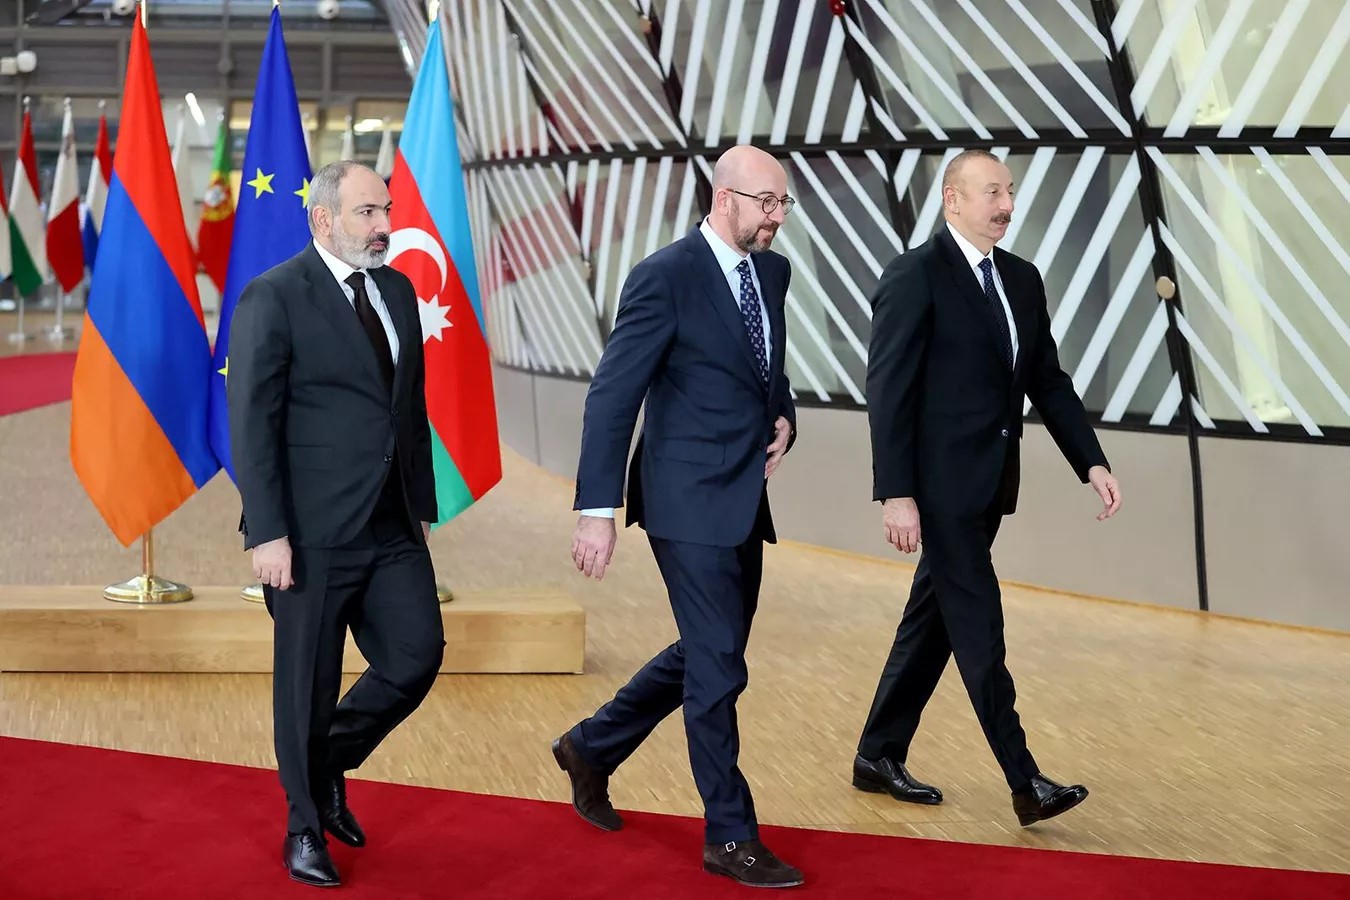 Pashinyan-Aliyev-Michel meeting in Brussels